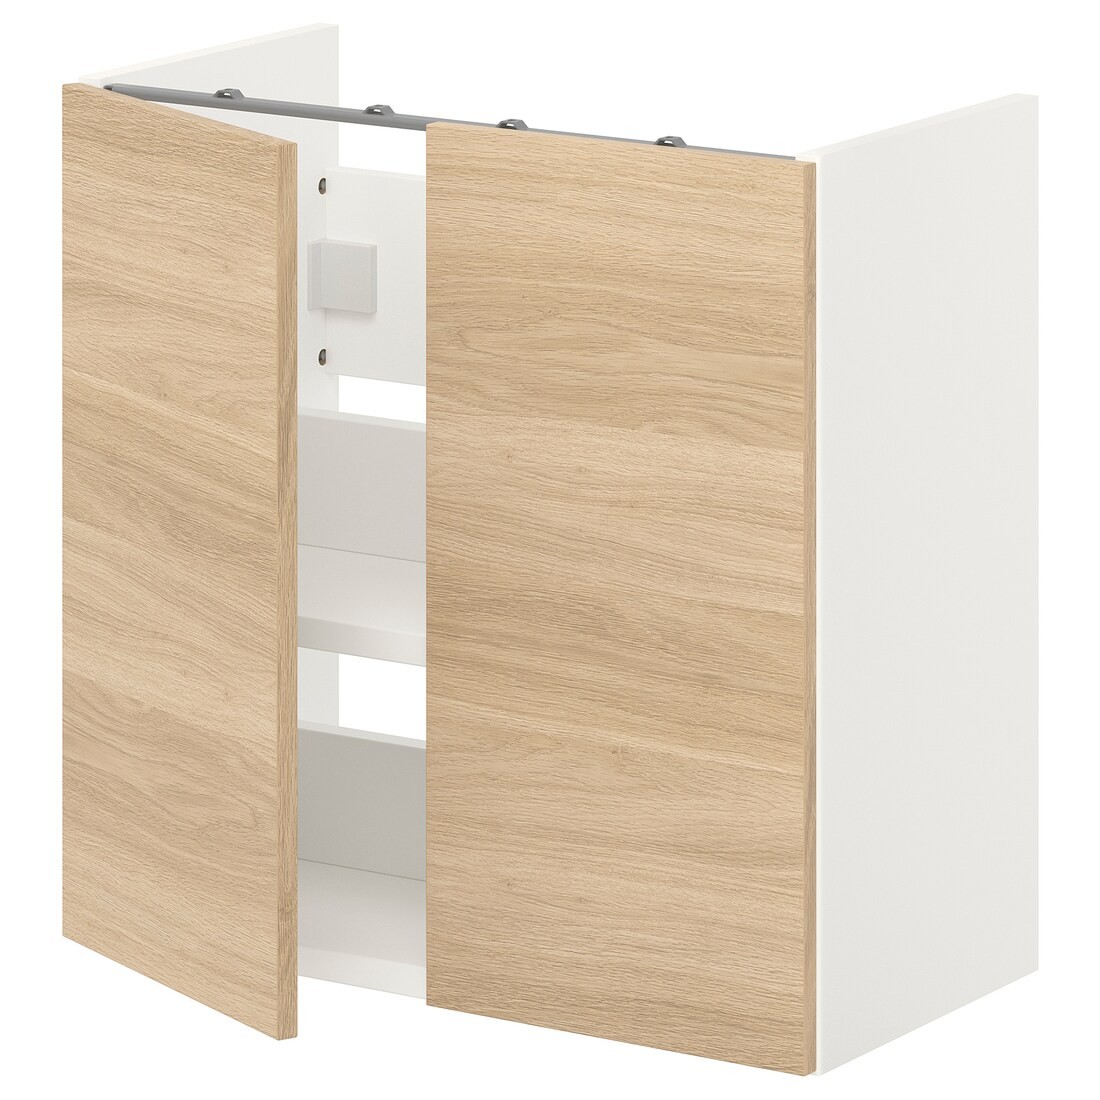 IKEA ENHET ЭНХЕТ Шкаф под умывальник с полкой и дверью, белый / имитация дуба, 60x32x60 см 99323647 993.236.47